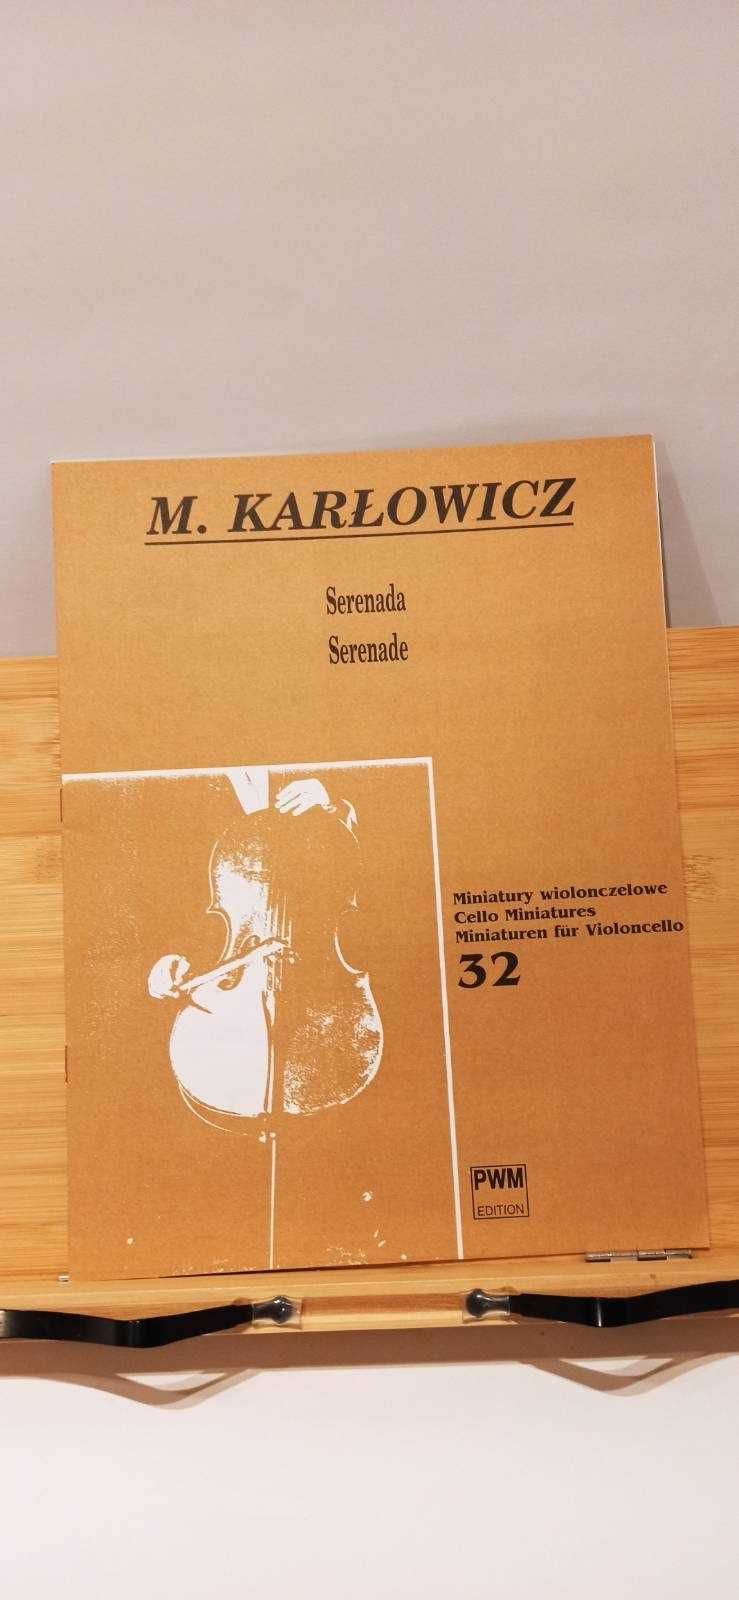 Miniatury wiolonczelowe 32 / Serenada / M. Karłowicz